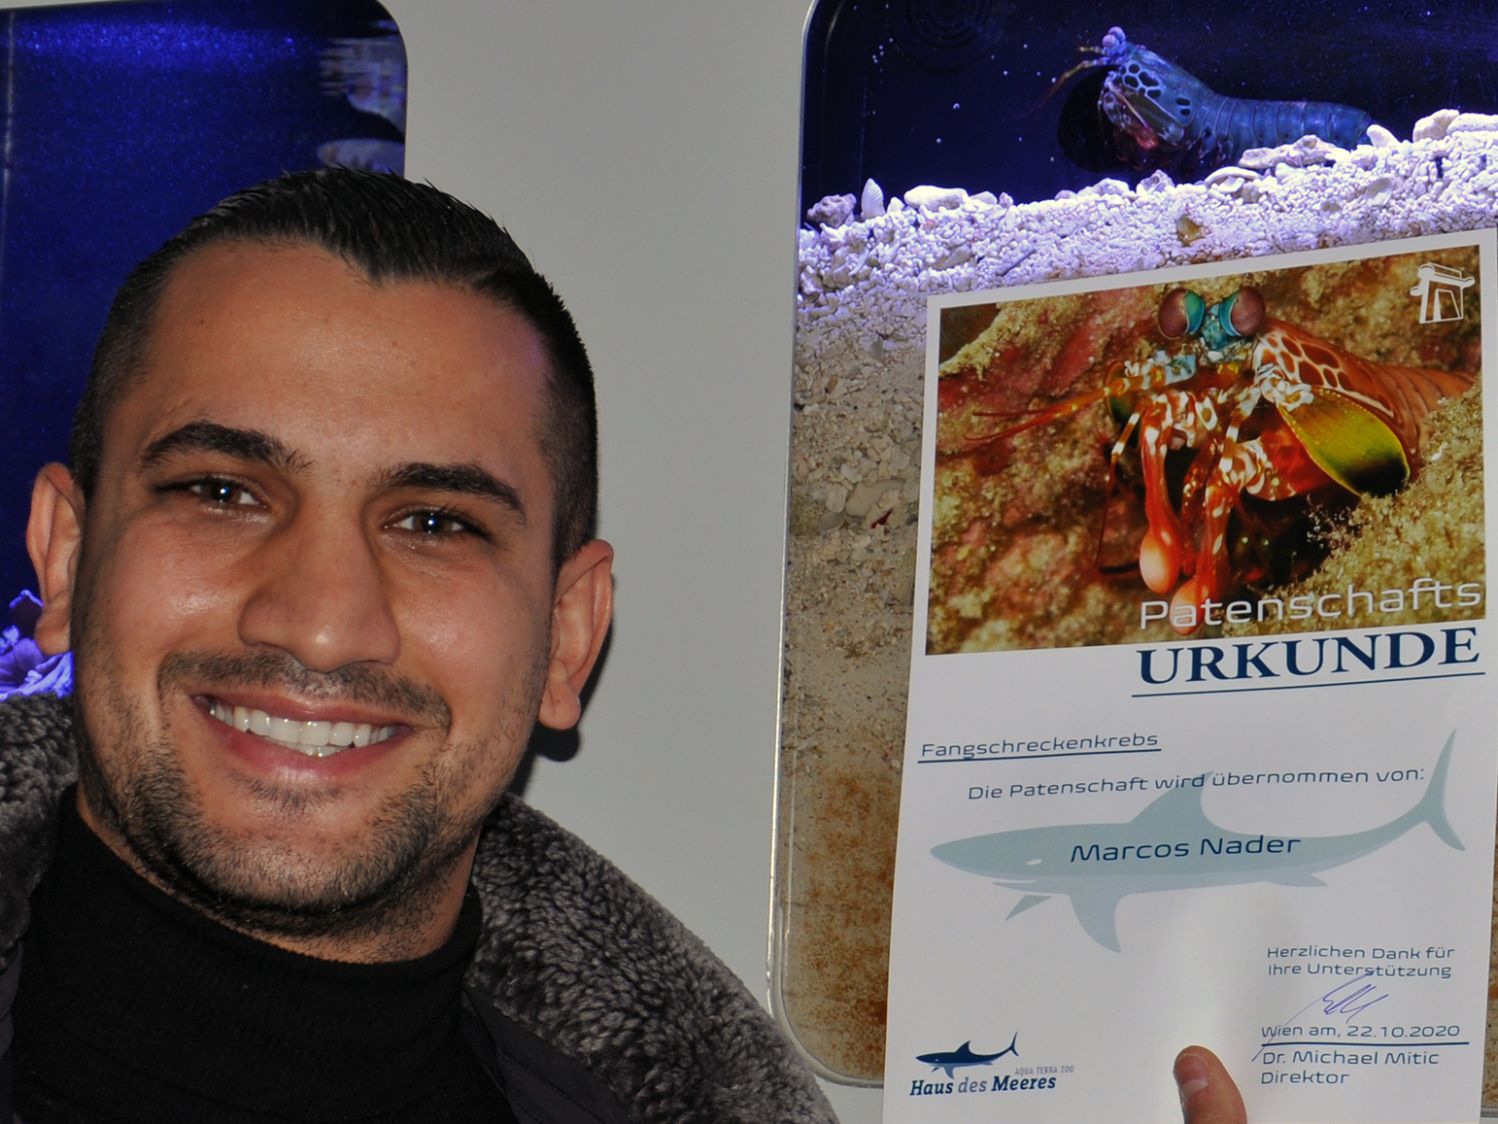 Profiboxer Marcos Nader vor Aquarium mit Fangschreckenkrebs